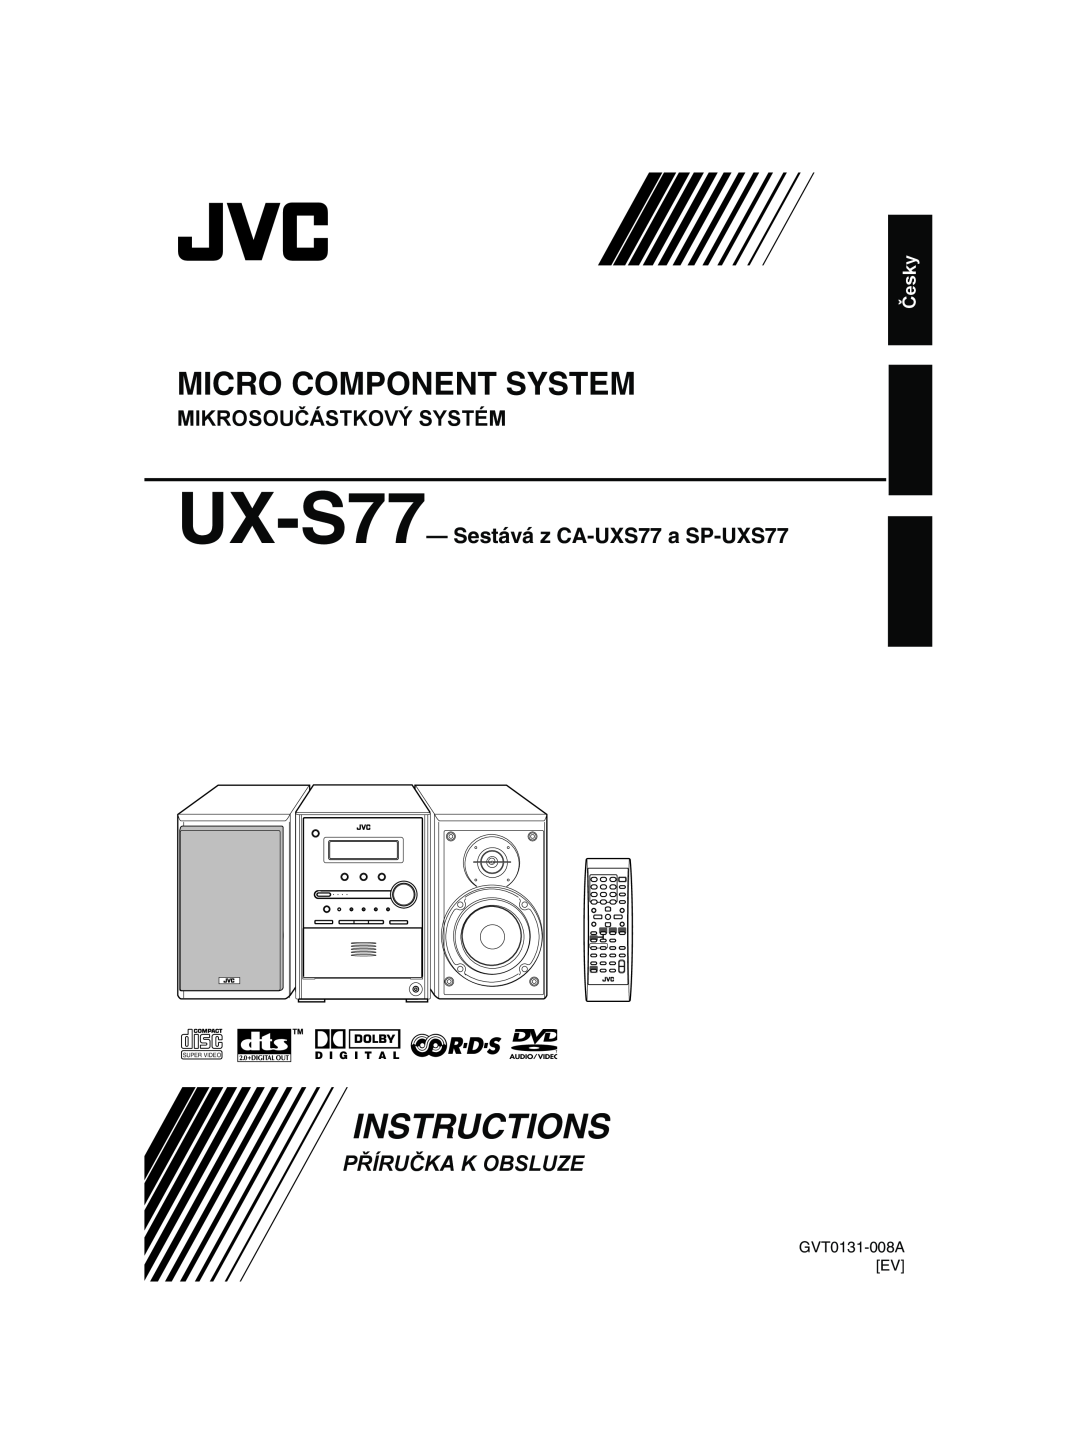 JVC manual Mikrosoučástkový Systém, UX-S77-Sestává z CA-UXS77a SP-UXS77, Česky, GVT0131-008AEV, Instructions 